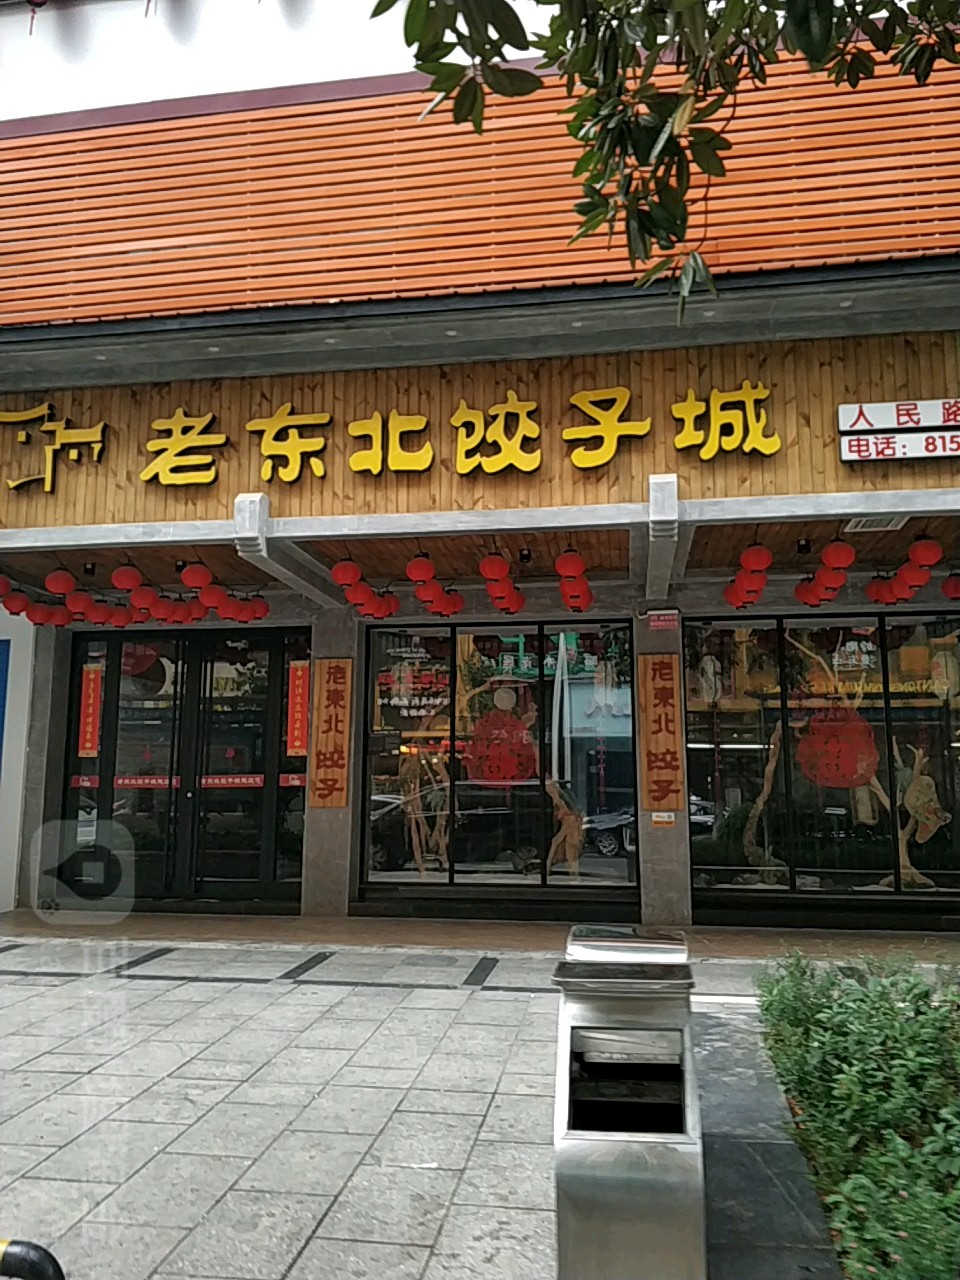 >> 美食标签: 饺子馆美食餐馆 快餐厅 中式快餐 老东北饺子成(人民路